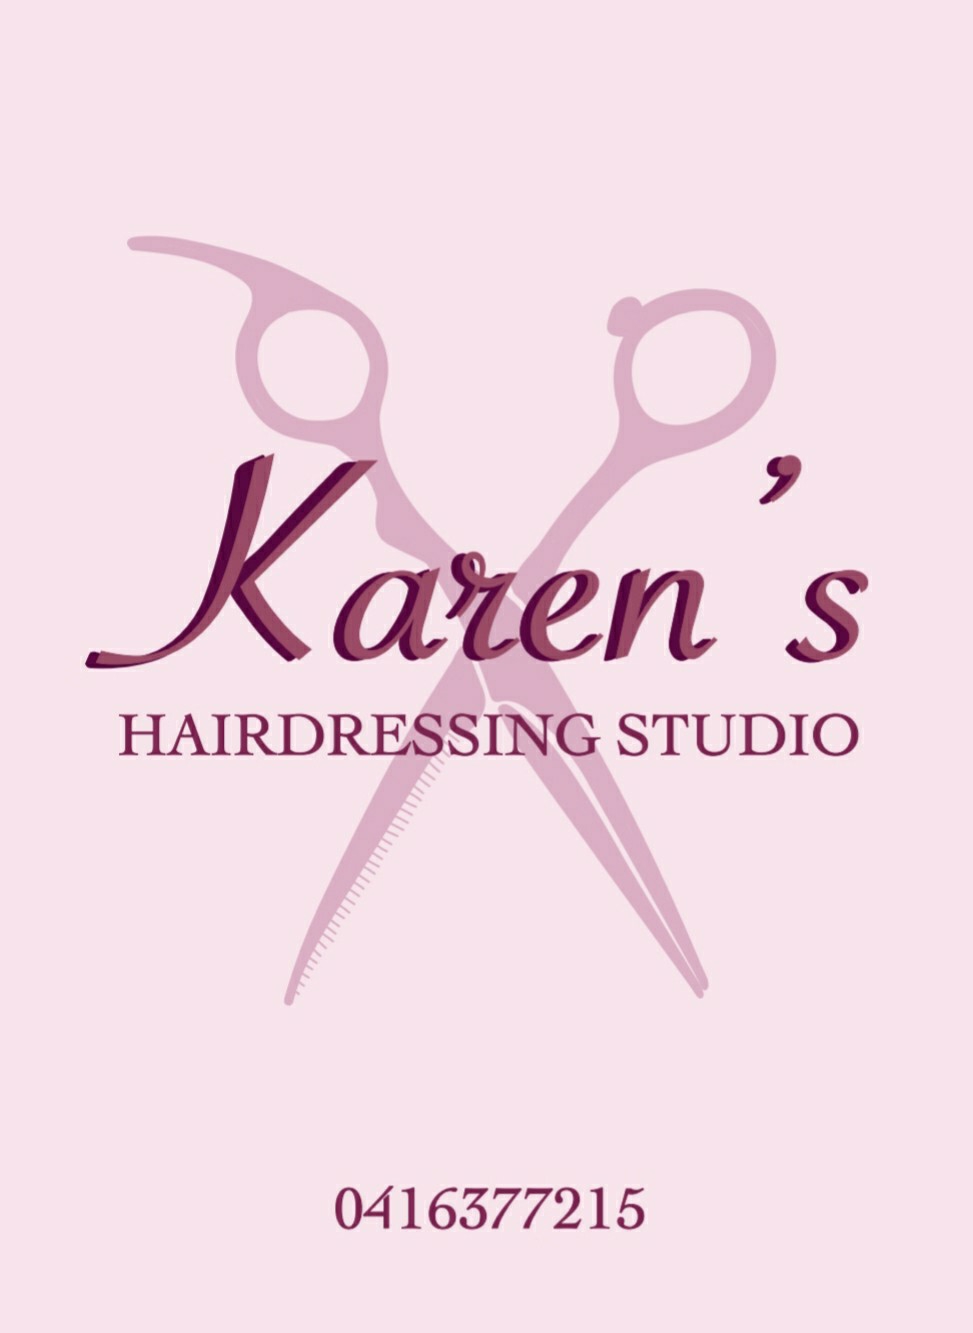 Karens Hairdressing Studio | hair care | 182 Awaba St, Morisset NSW 2264, Australia | 0416377215 OR +61 416 377 215